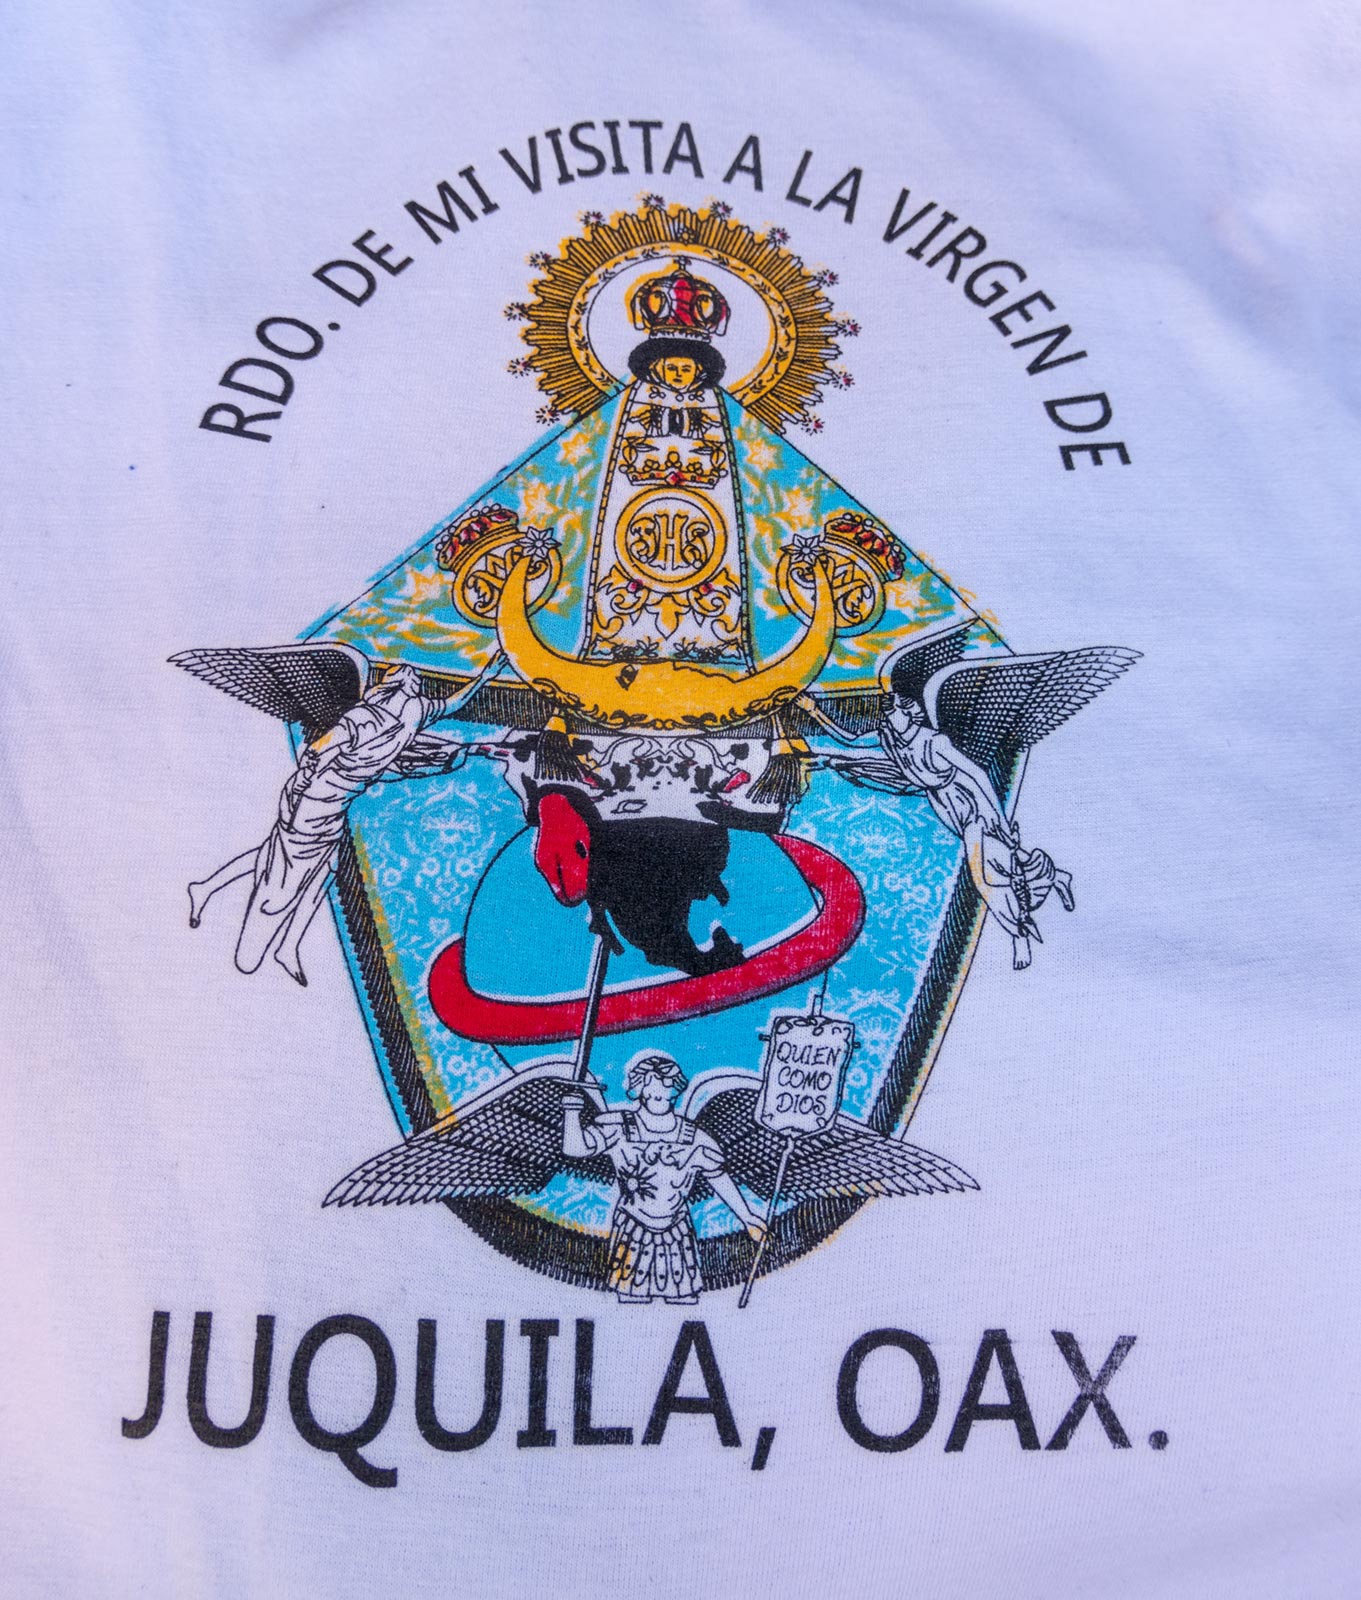 Immagine della statua miracolosa della Vergine Maria su t-shirt, in vendita nel mercato vicino alla Chiesa della Vergine Maria, Juquila